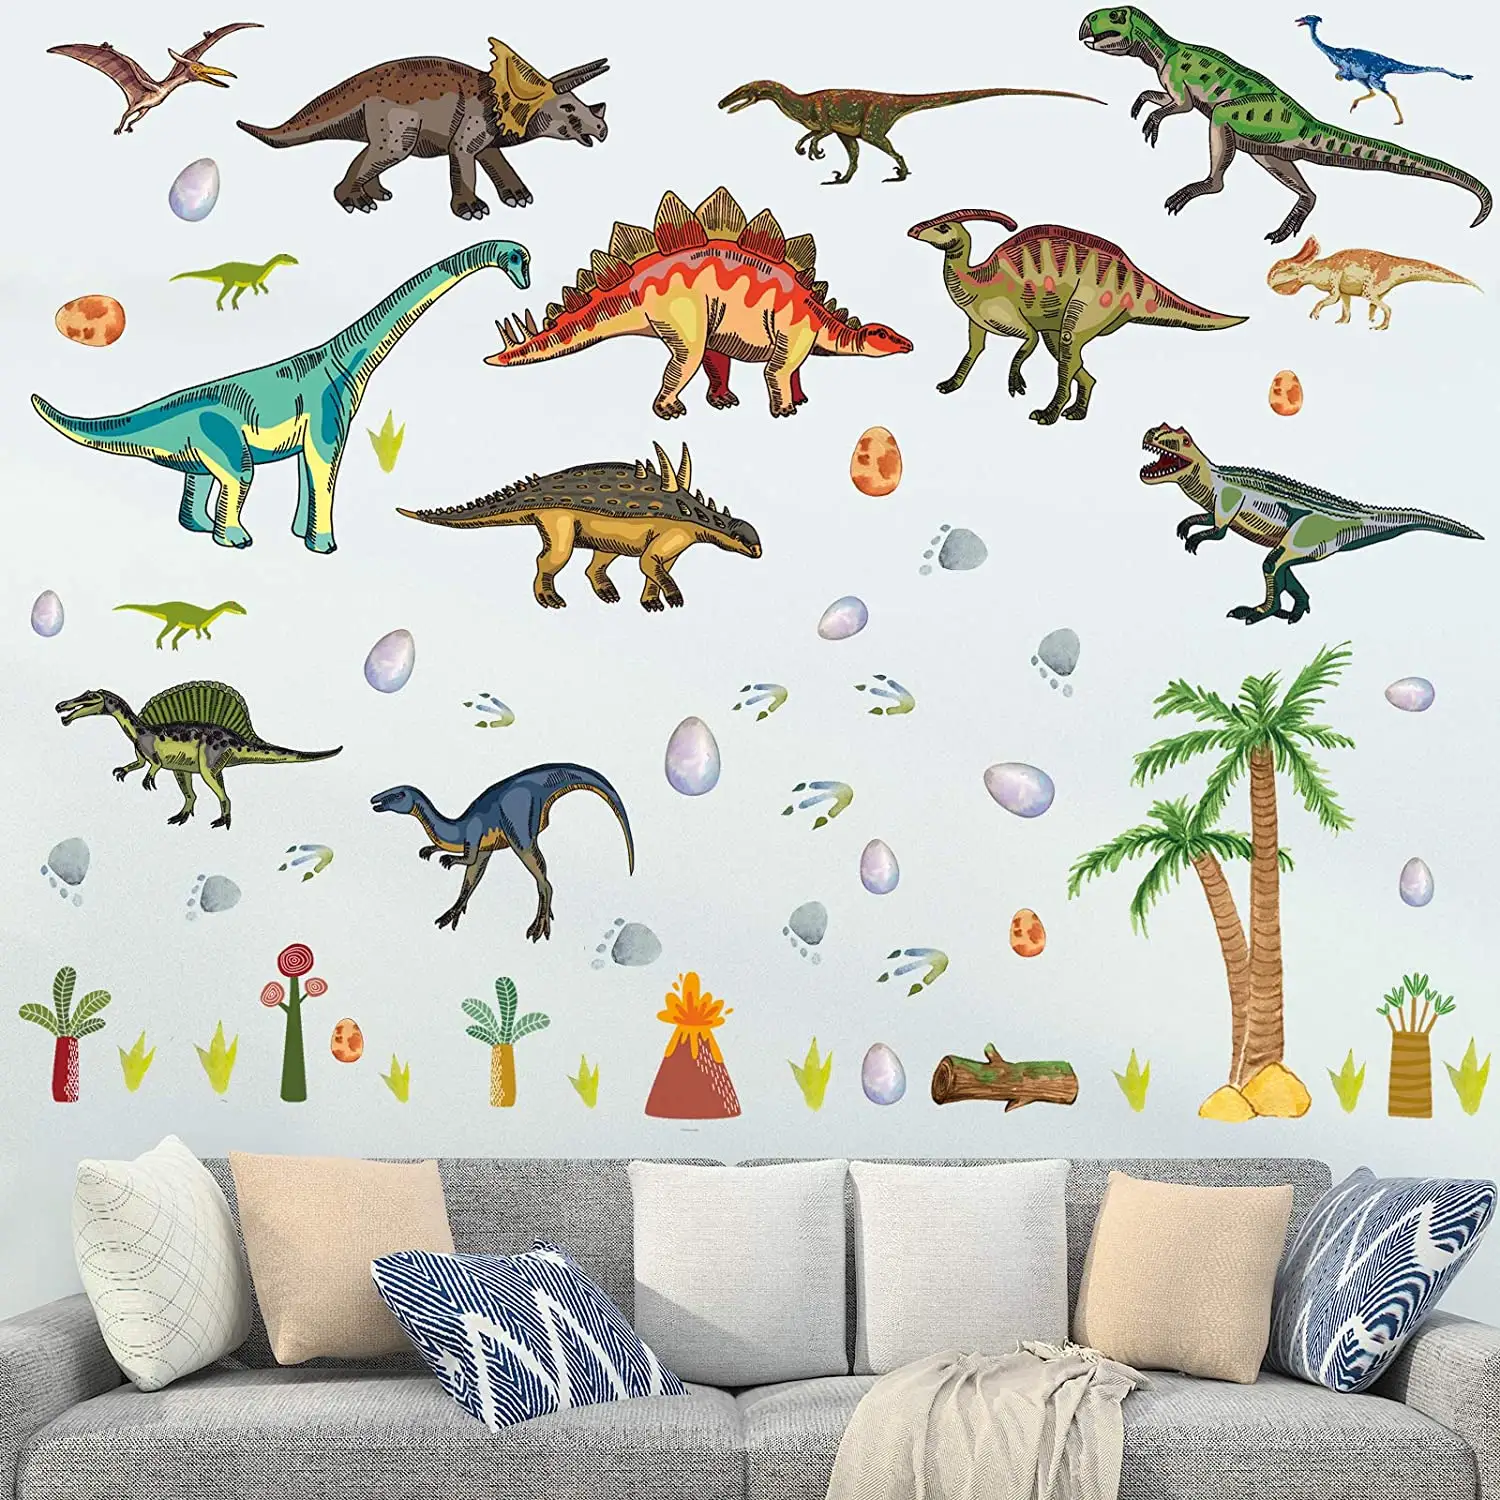 男の子の部屋のための恐竜の壁のステッカー子供のための水彩画の恐竜の壁のステッカー寝室保育園のための大きな恐竜の壁の装飾